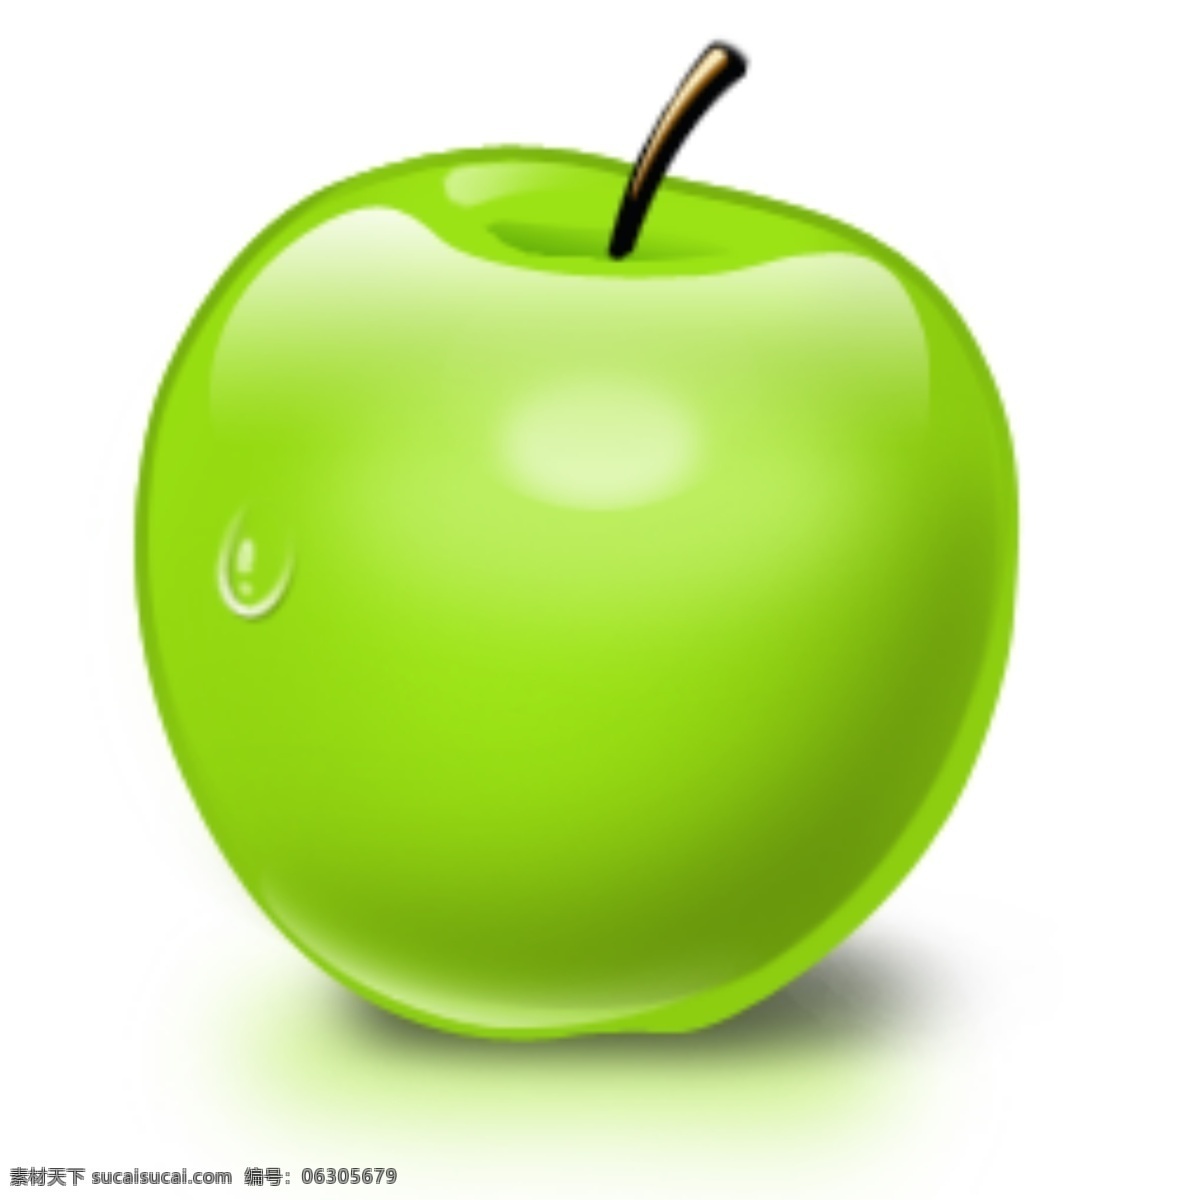 apple 苹果 水晶 网页素材 图标 分层 水滴 水滴图片 水果图片 水果图片大全 水果图片下载 源文件 绿色苹果 水晶苹果 网页模板